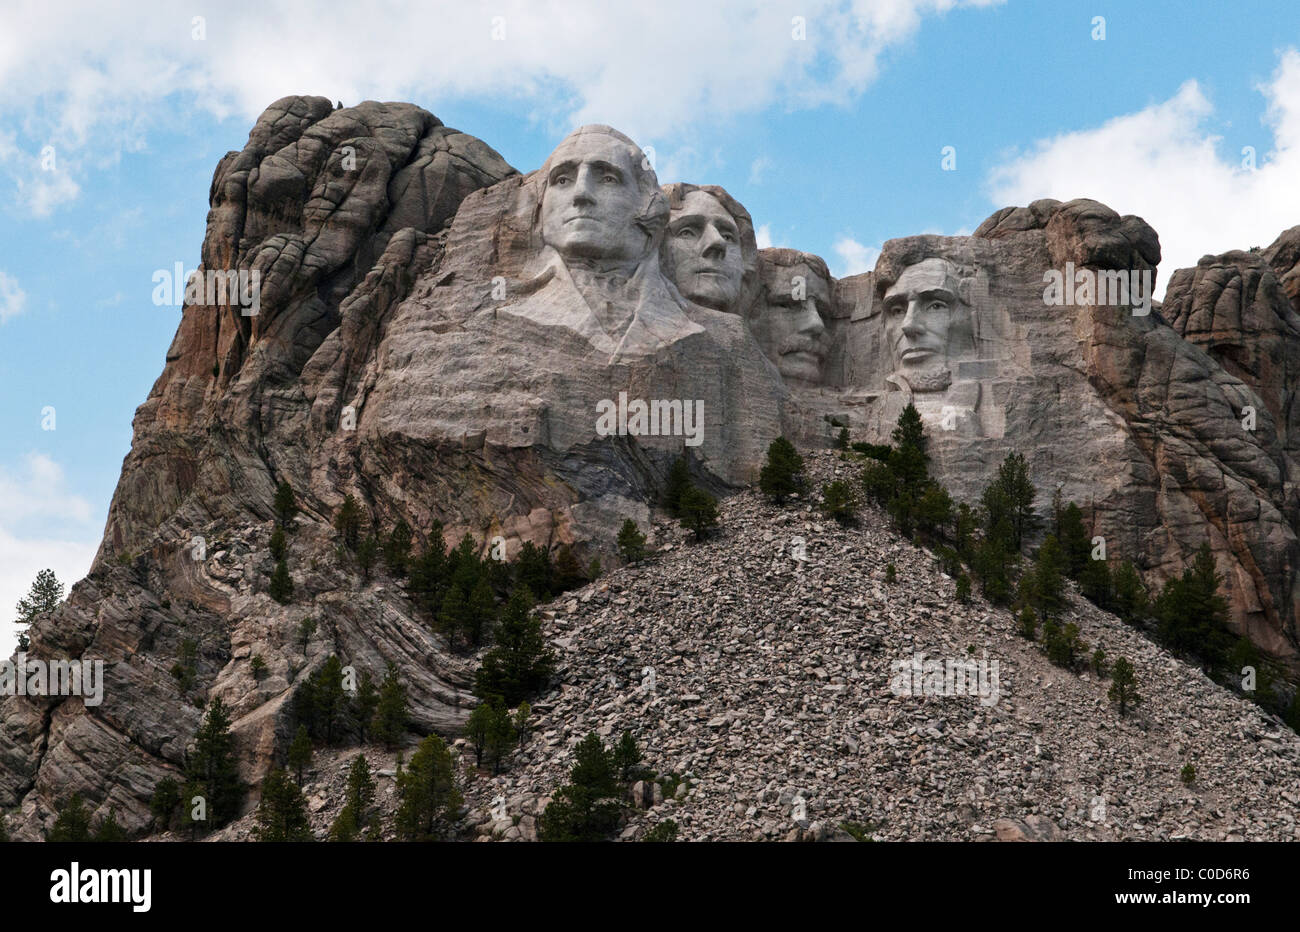 Le mont Rushmore dans le Dakota du Sud USA Banque D'Images